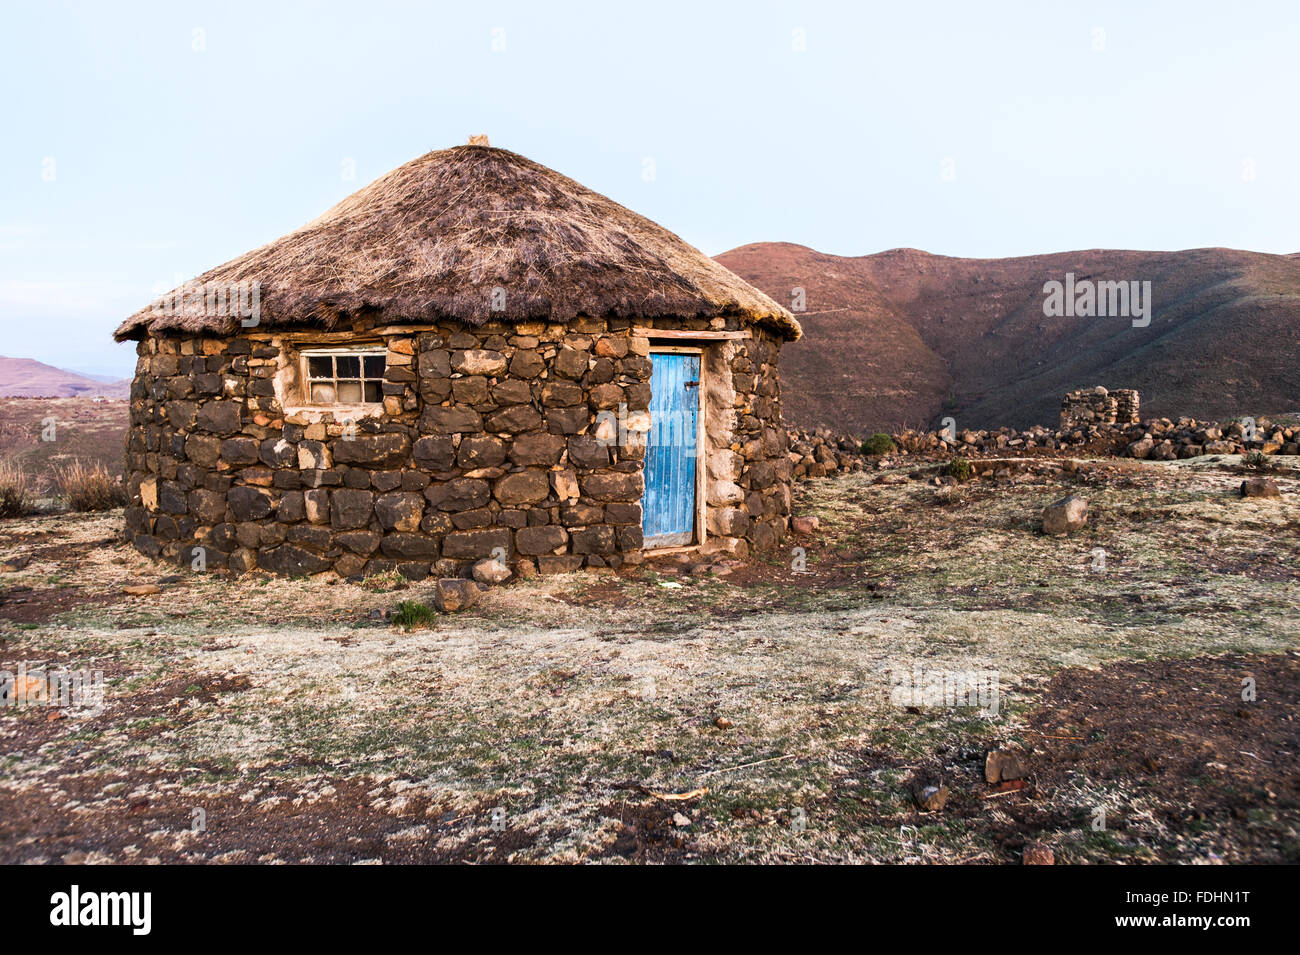 Village hutte avec une porte bleue dans la région de Sani Pass, le Lesotho, l'Afrique. Banque D'Images